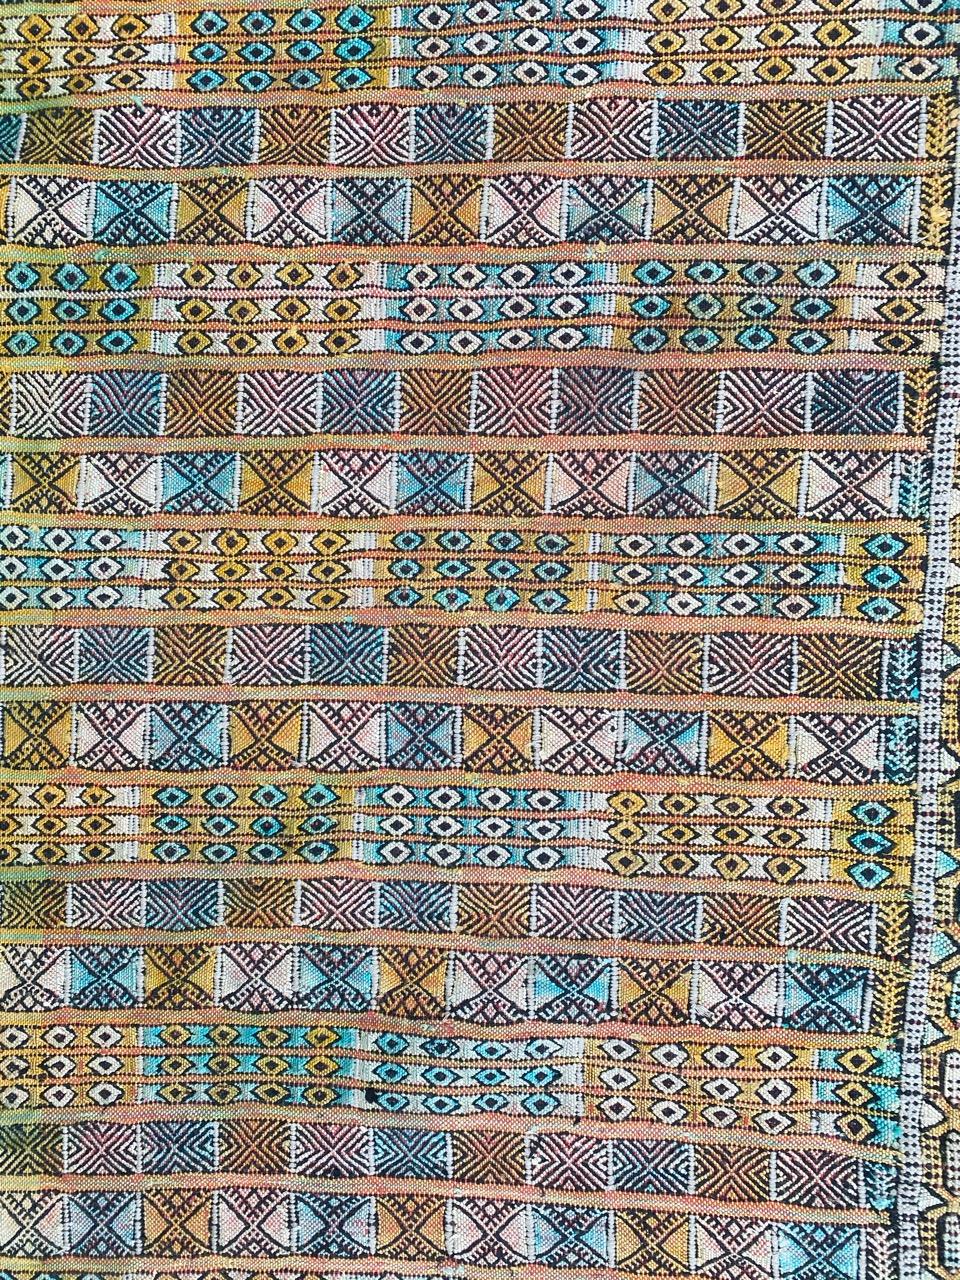 Joli tapis marocain tissé à plat avec un design tribal géométrique et de belles couleurs, entièrement tissé à la main avec de la laine et de la soie sur une base de coton.

✨✨✨
